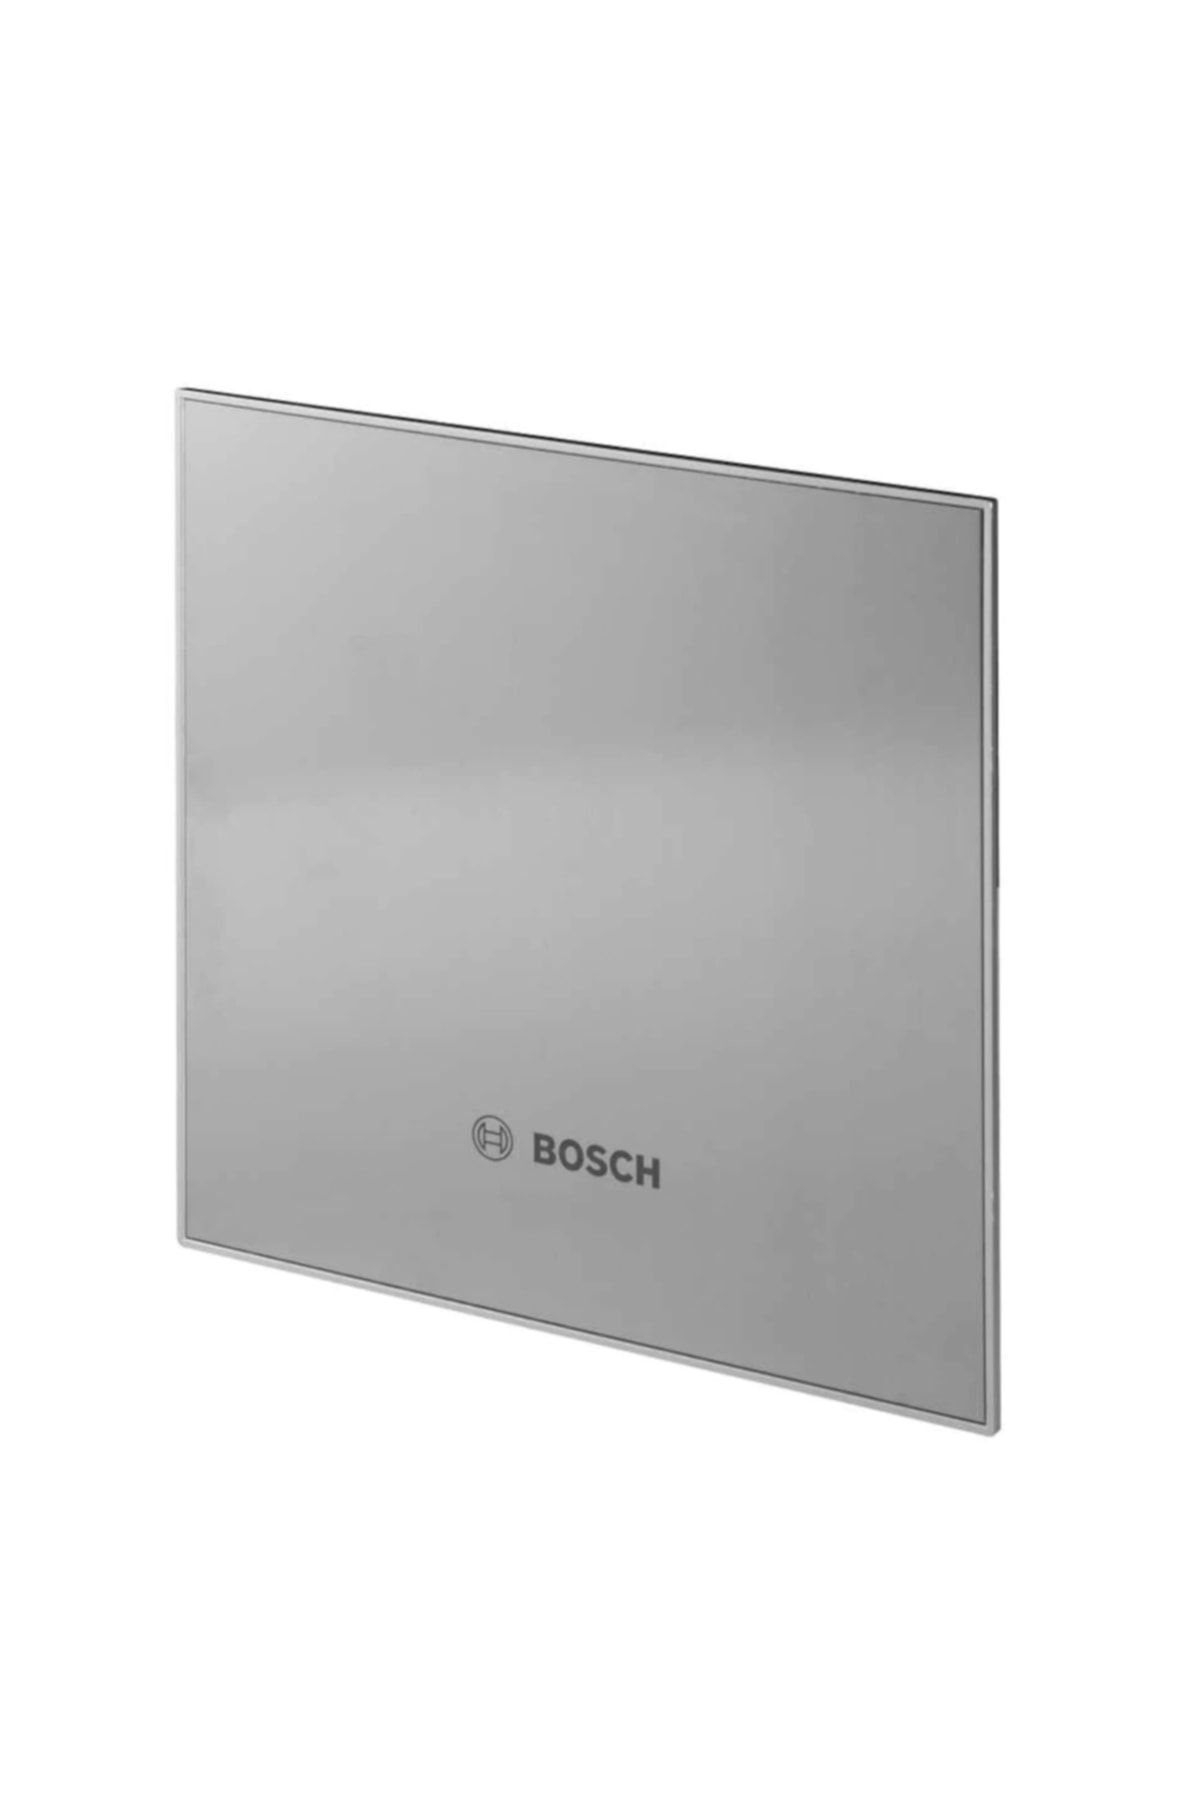 Bosch Dp125 I Inox Dekoratif Panel-f1700 Ws125 Serisi Aspiratör Içindir.sadece Kapaktır